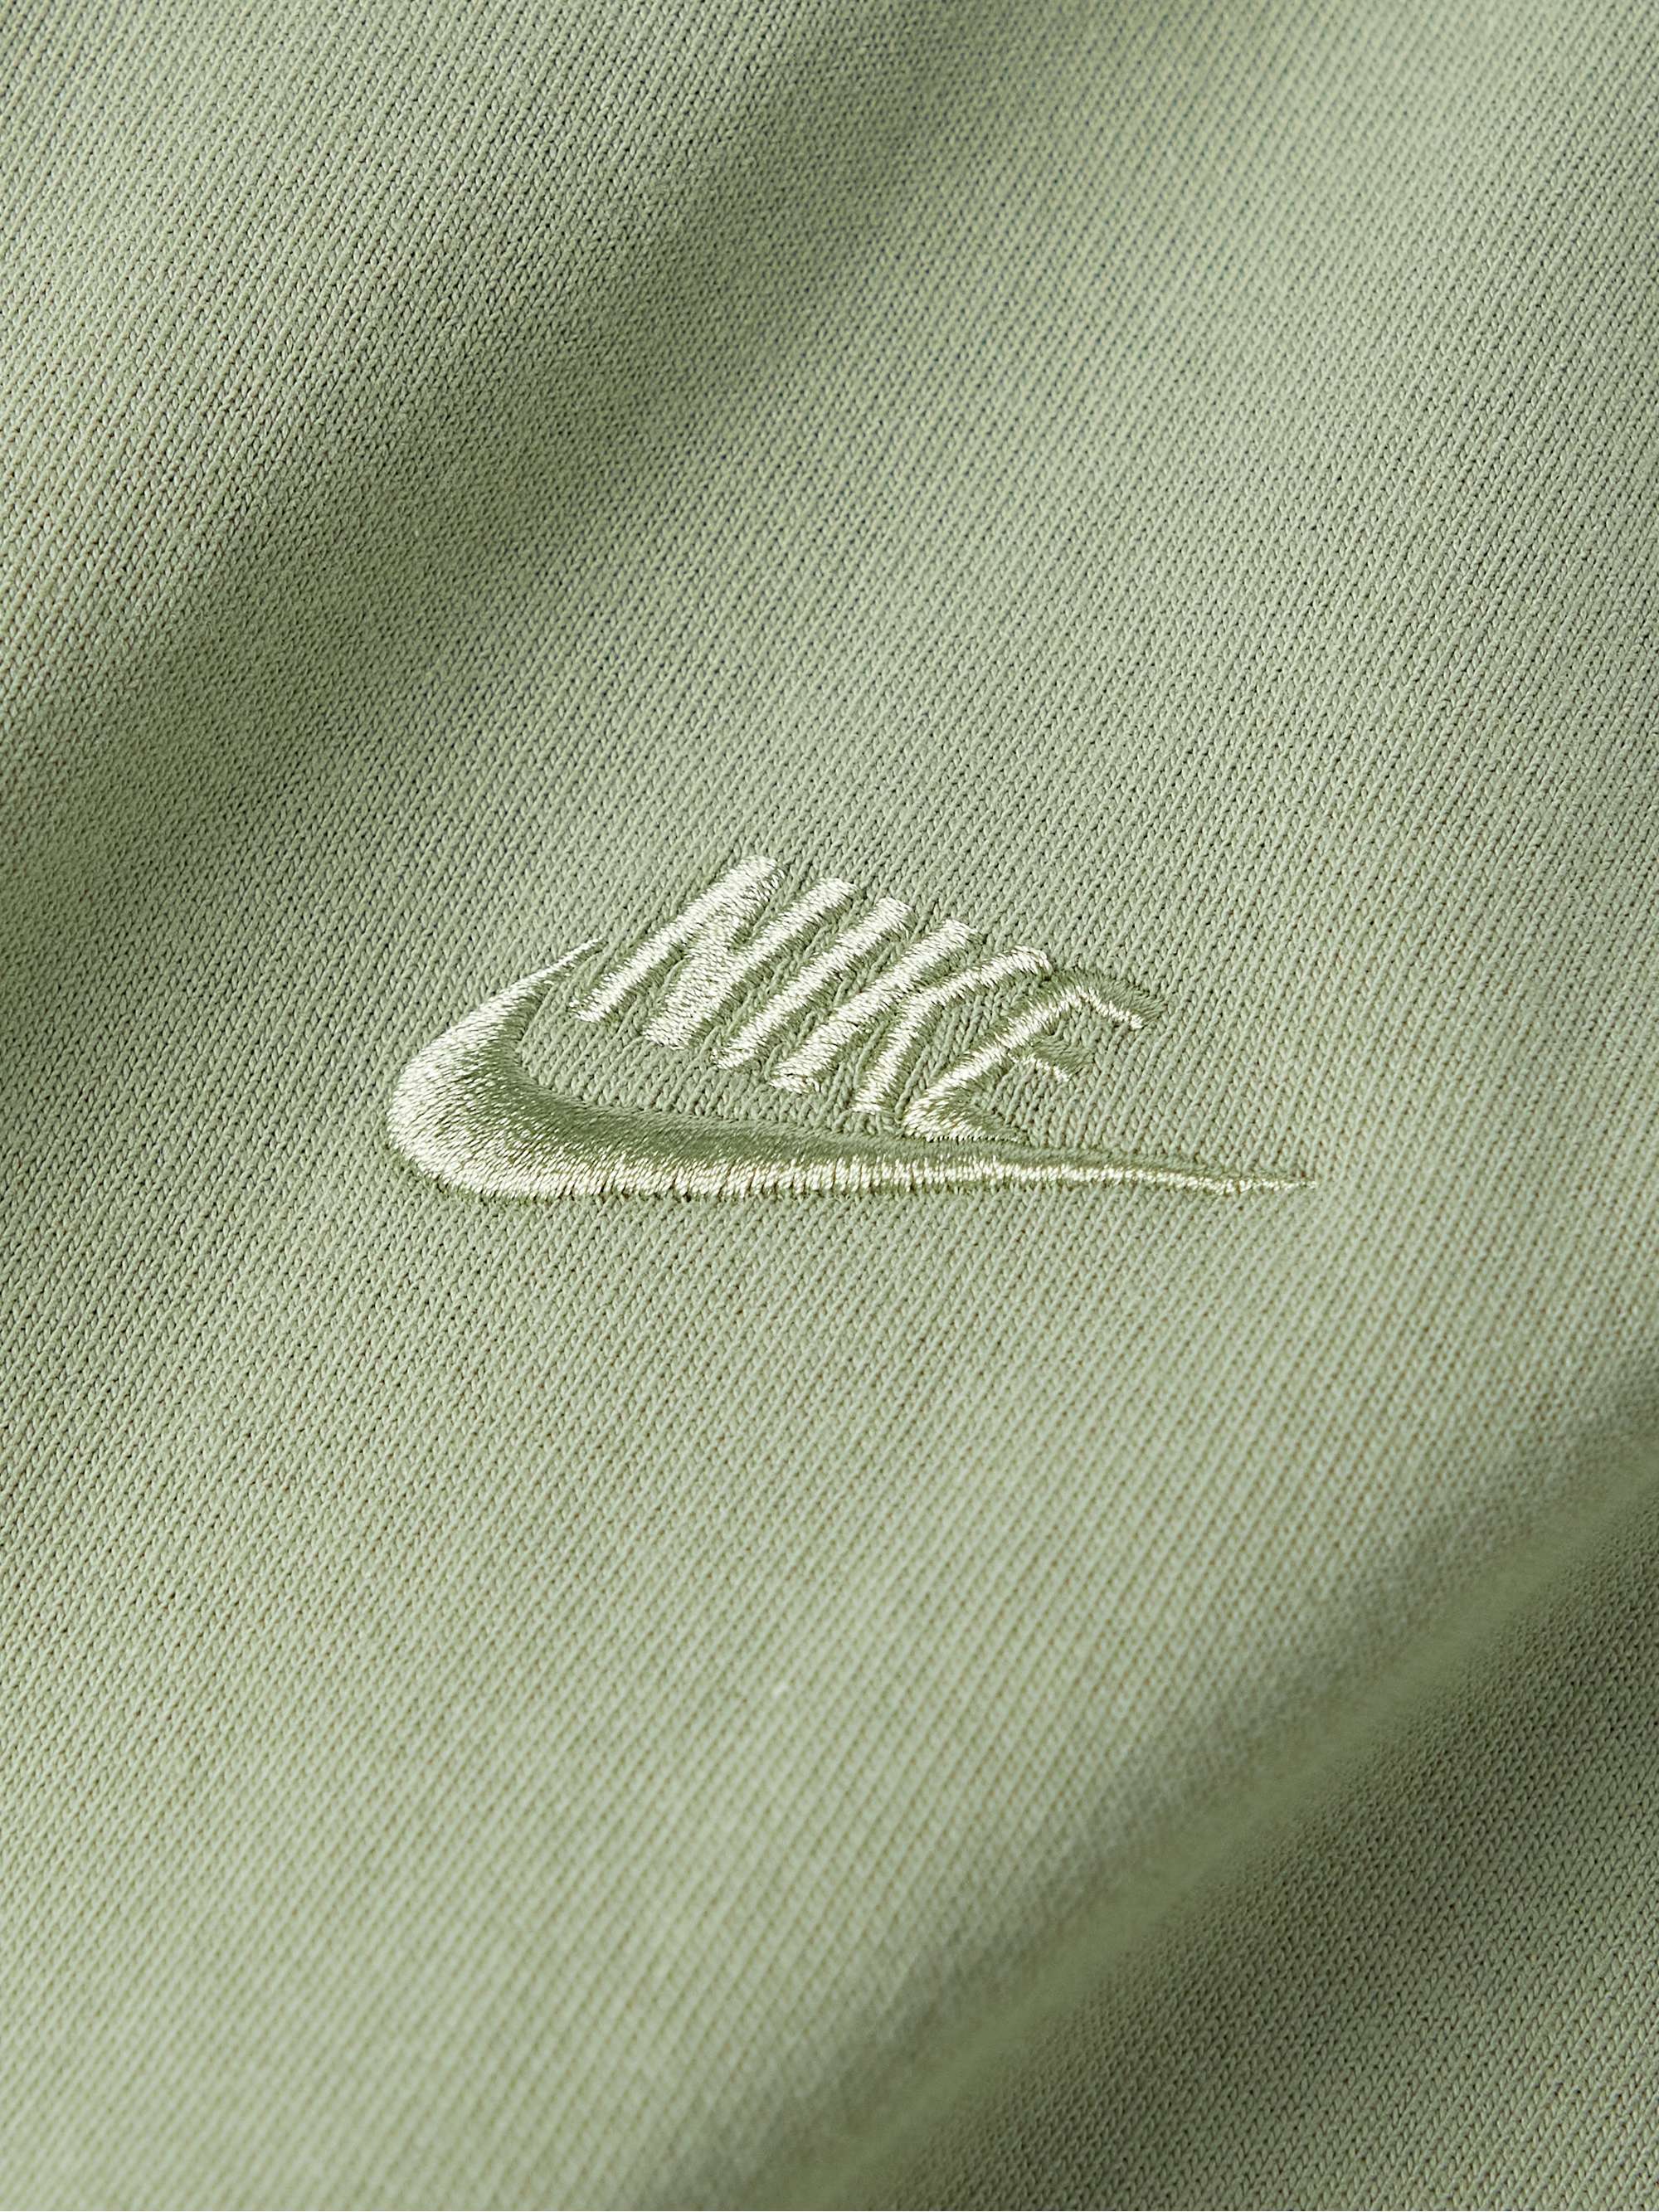 NIKE Sportswear Premium Essentials Logo-Embroidered Cotton-Jersey T-Shirt  for Men | MR PORTER